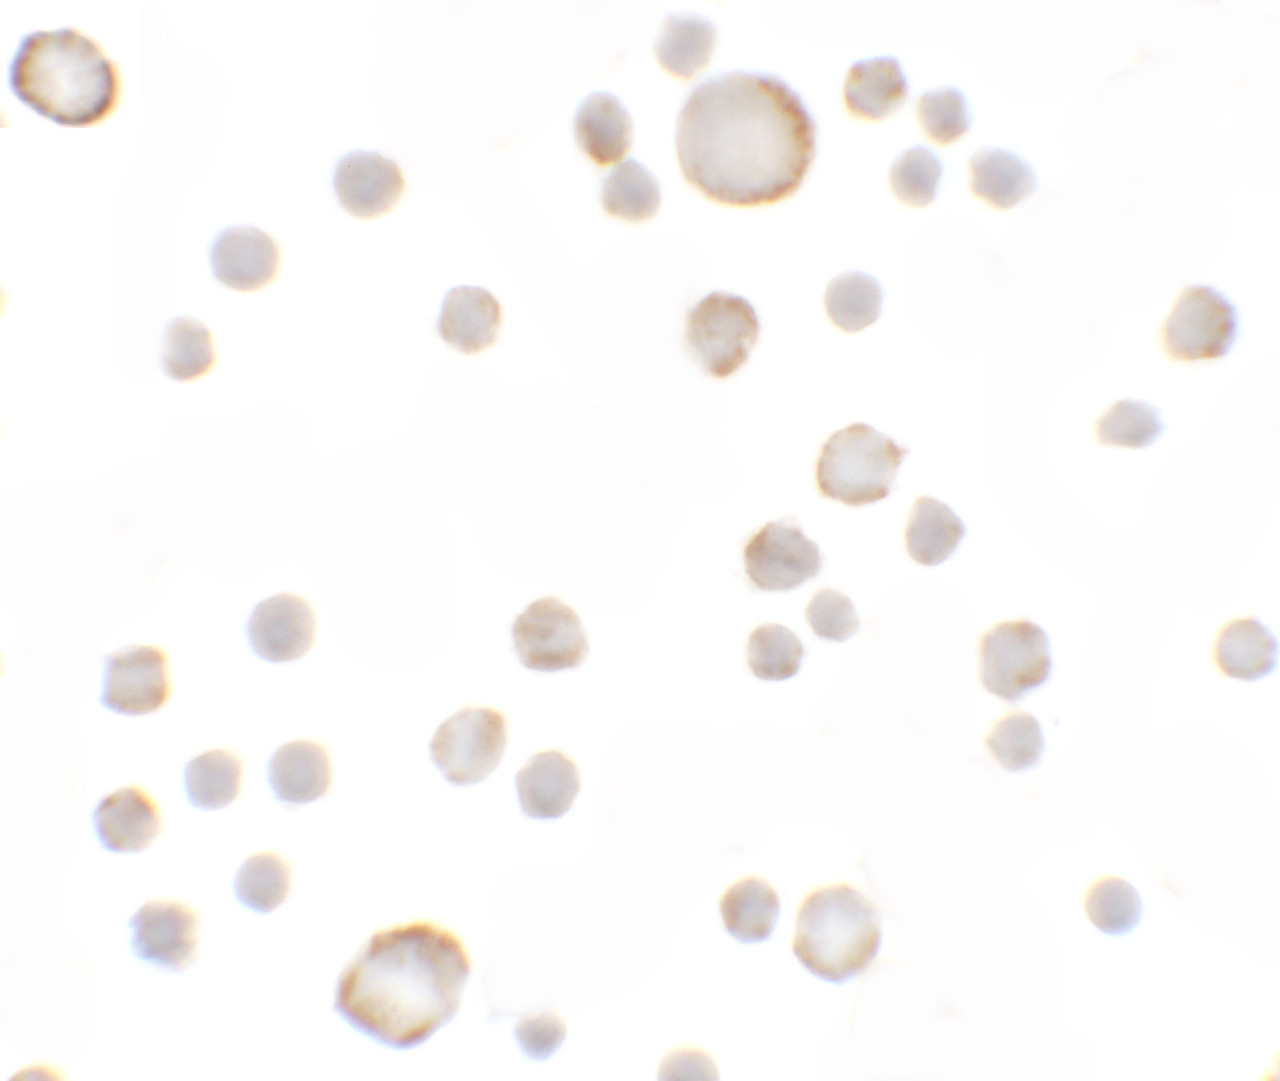 Immunocytochemistry of Anosmin in MCF7 cells with Anosmin antibody at 5 ug/mL.